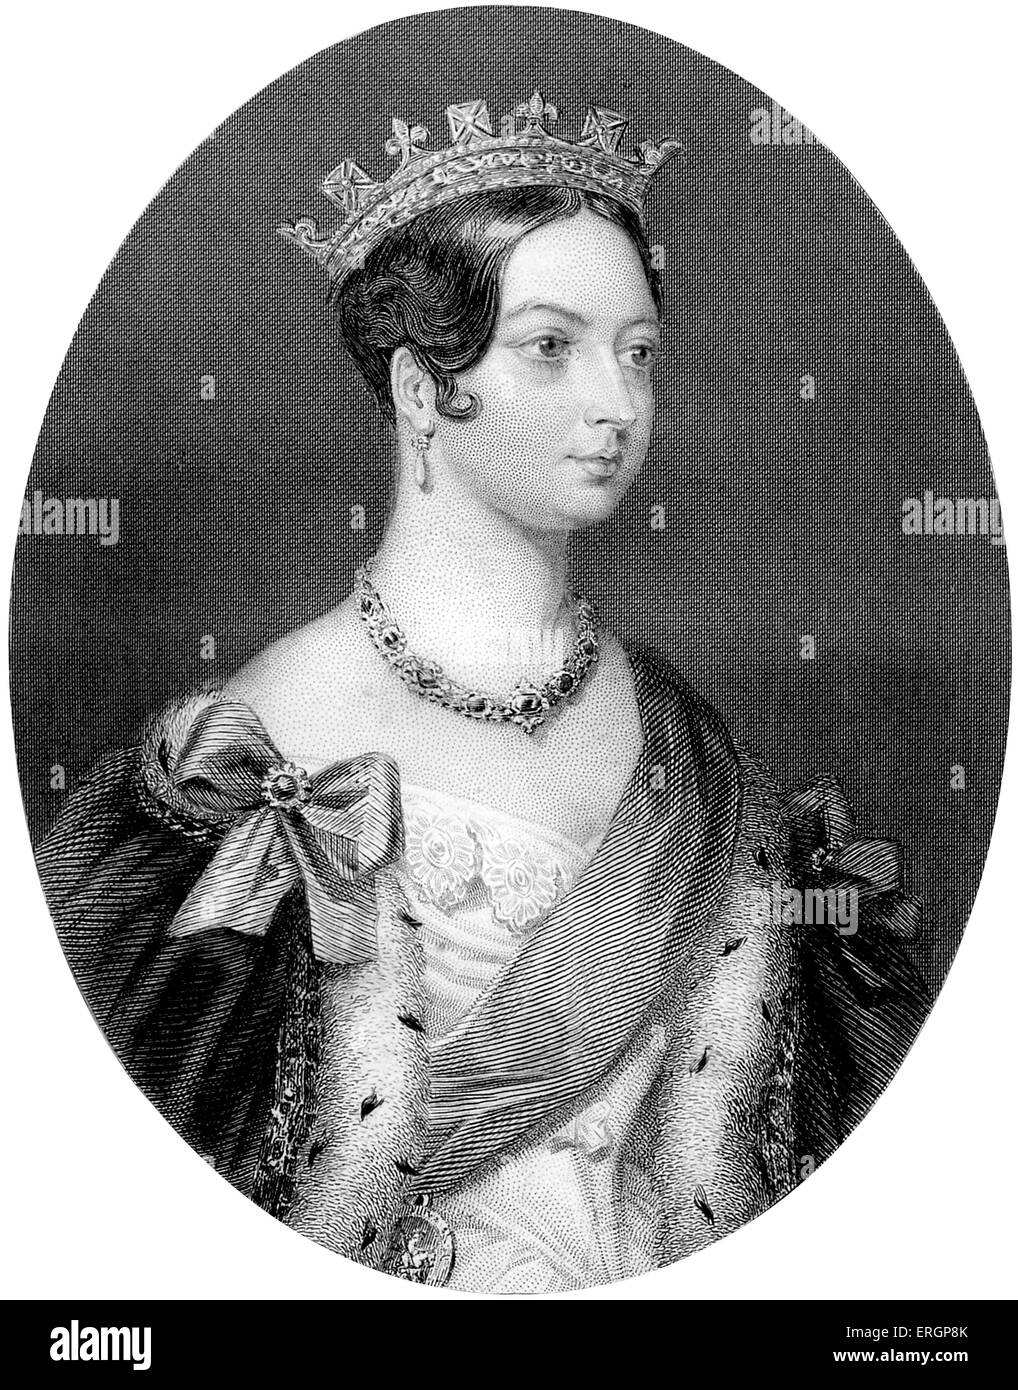 La reine Victoria, portrait. Souverain du Royaume-Uni de Grande-Bretagne et d'Irlande de 20 juin 1837 jusqu'à la mort. À partir de la chambre 1 Banque D'Images